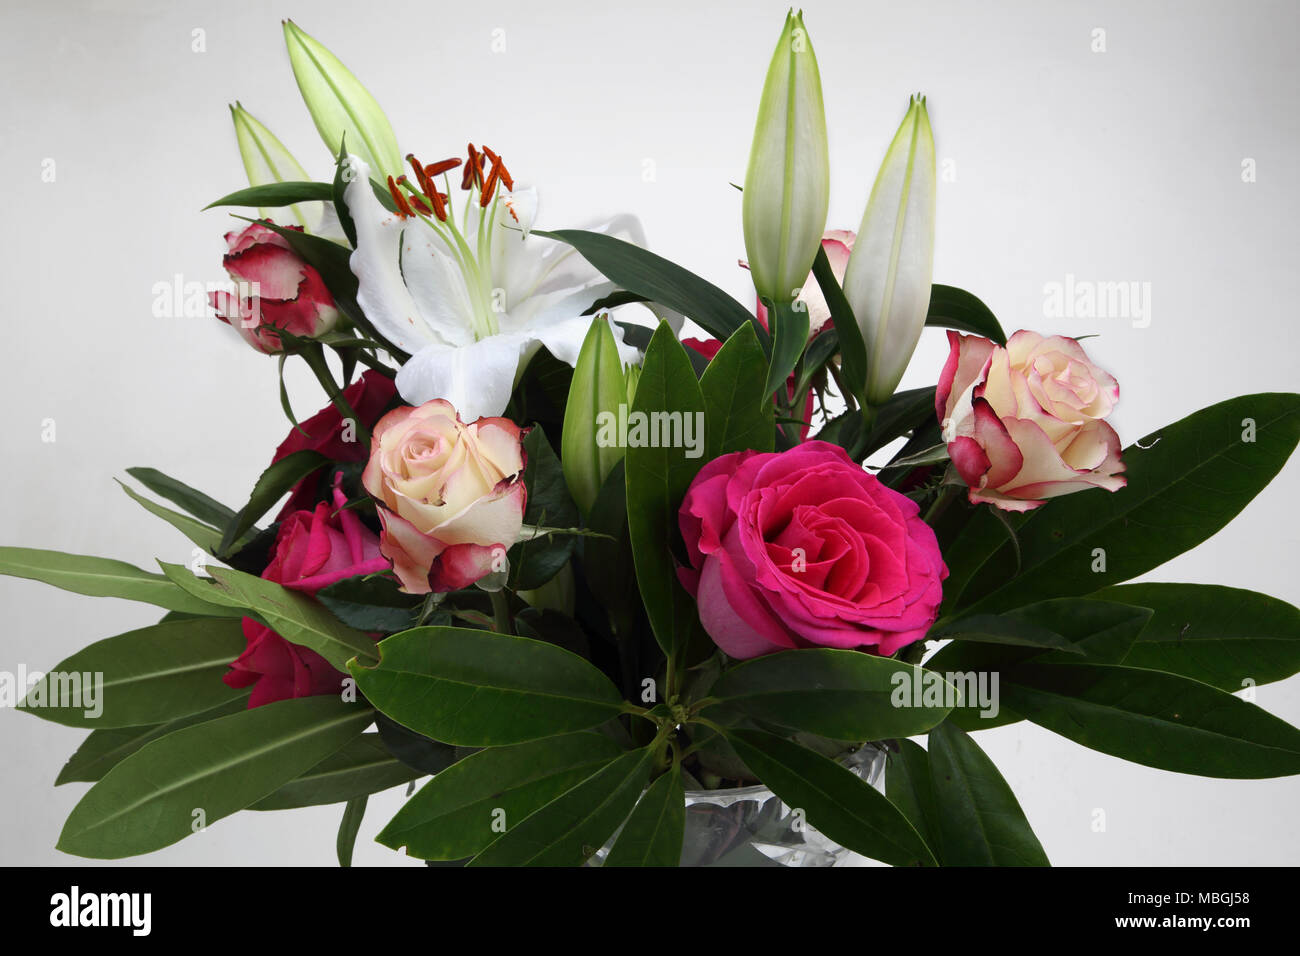 Blumenstrauß Rosen und Lilien in Vase Glas Kristall Stockfoto